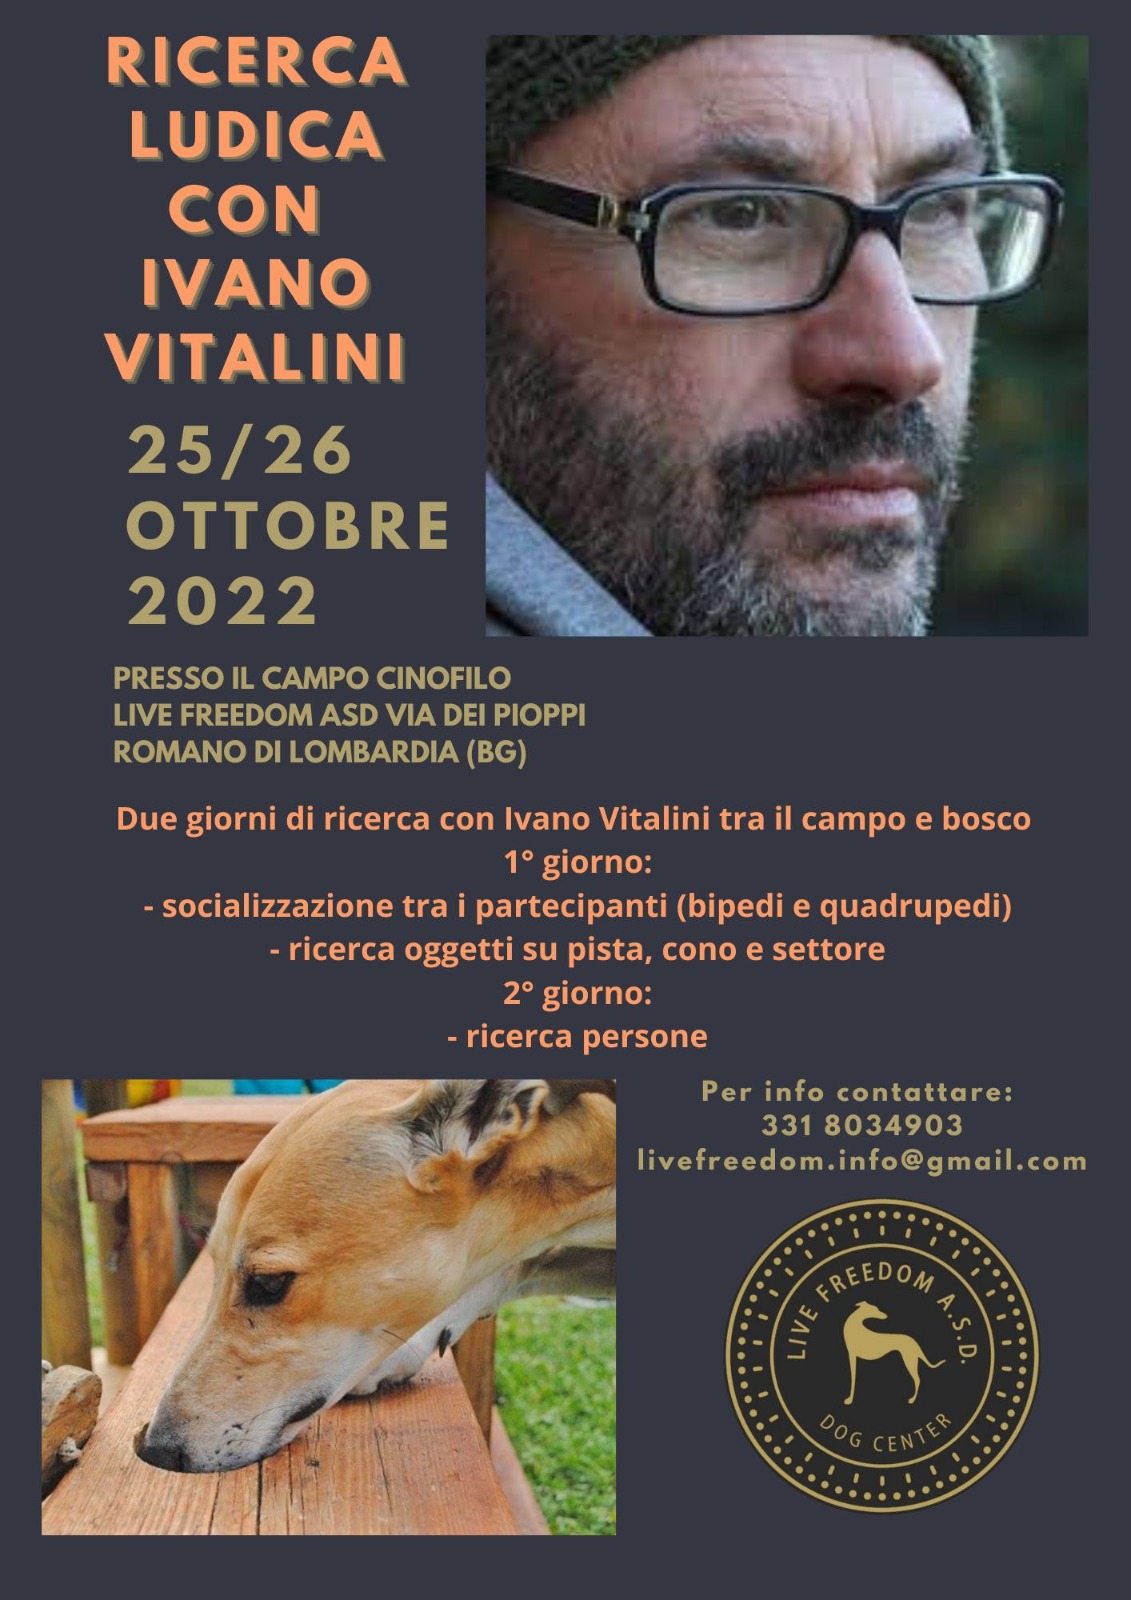 Romano di Lombardia 25 e 26 ottobre 2022 - Ricerca ludica con Ivano Vitalini